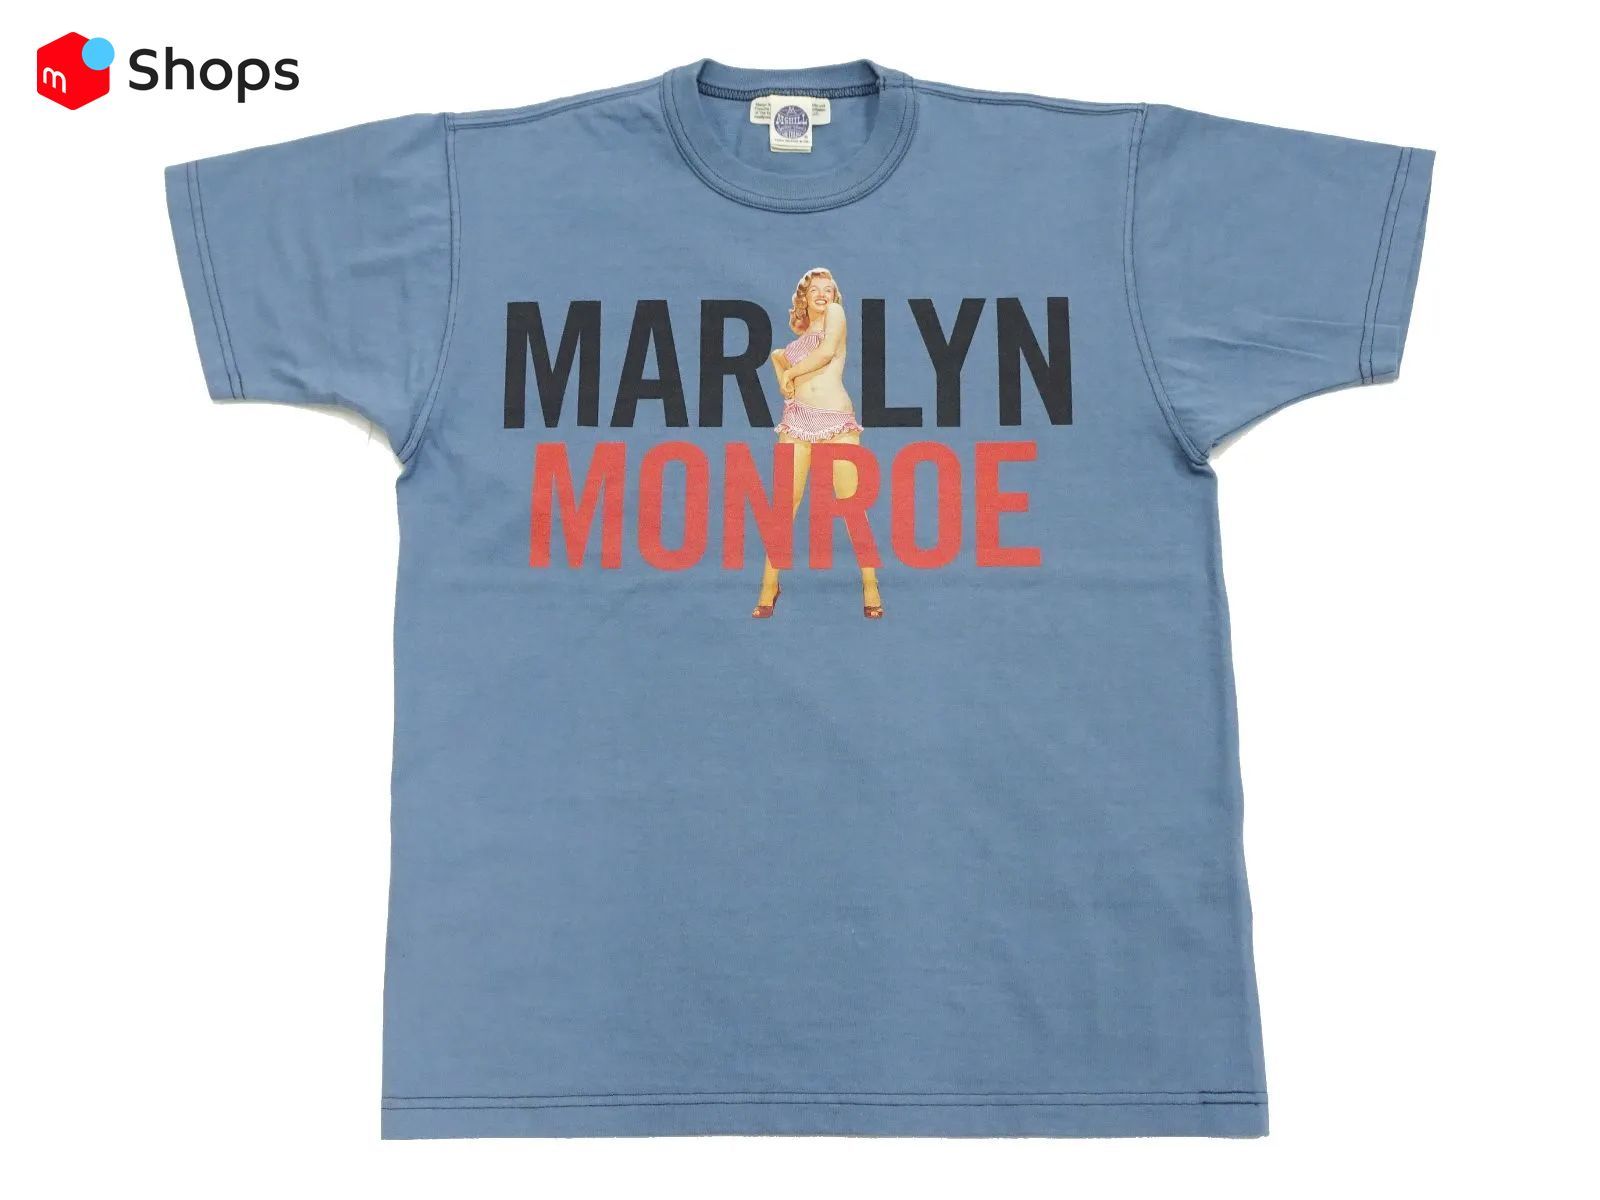 (トイズマッコイ) Toys McCoy 半袖Tシャツ 「MARILYN MONROE TEE PIN UP GIRL」 TMC2310  マリリン・モンロー ピンナップガール Tee ブルーグレー 新品 アメカジショップ